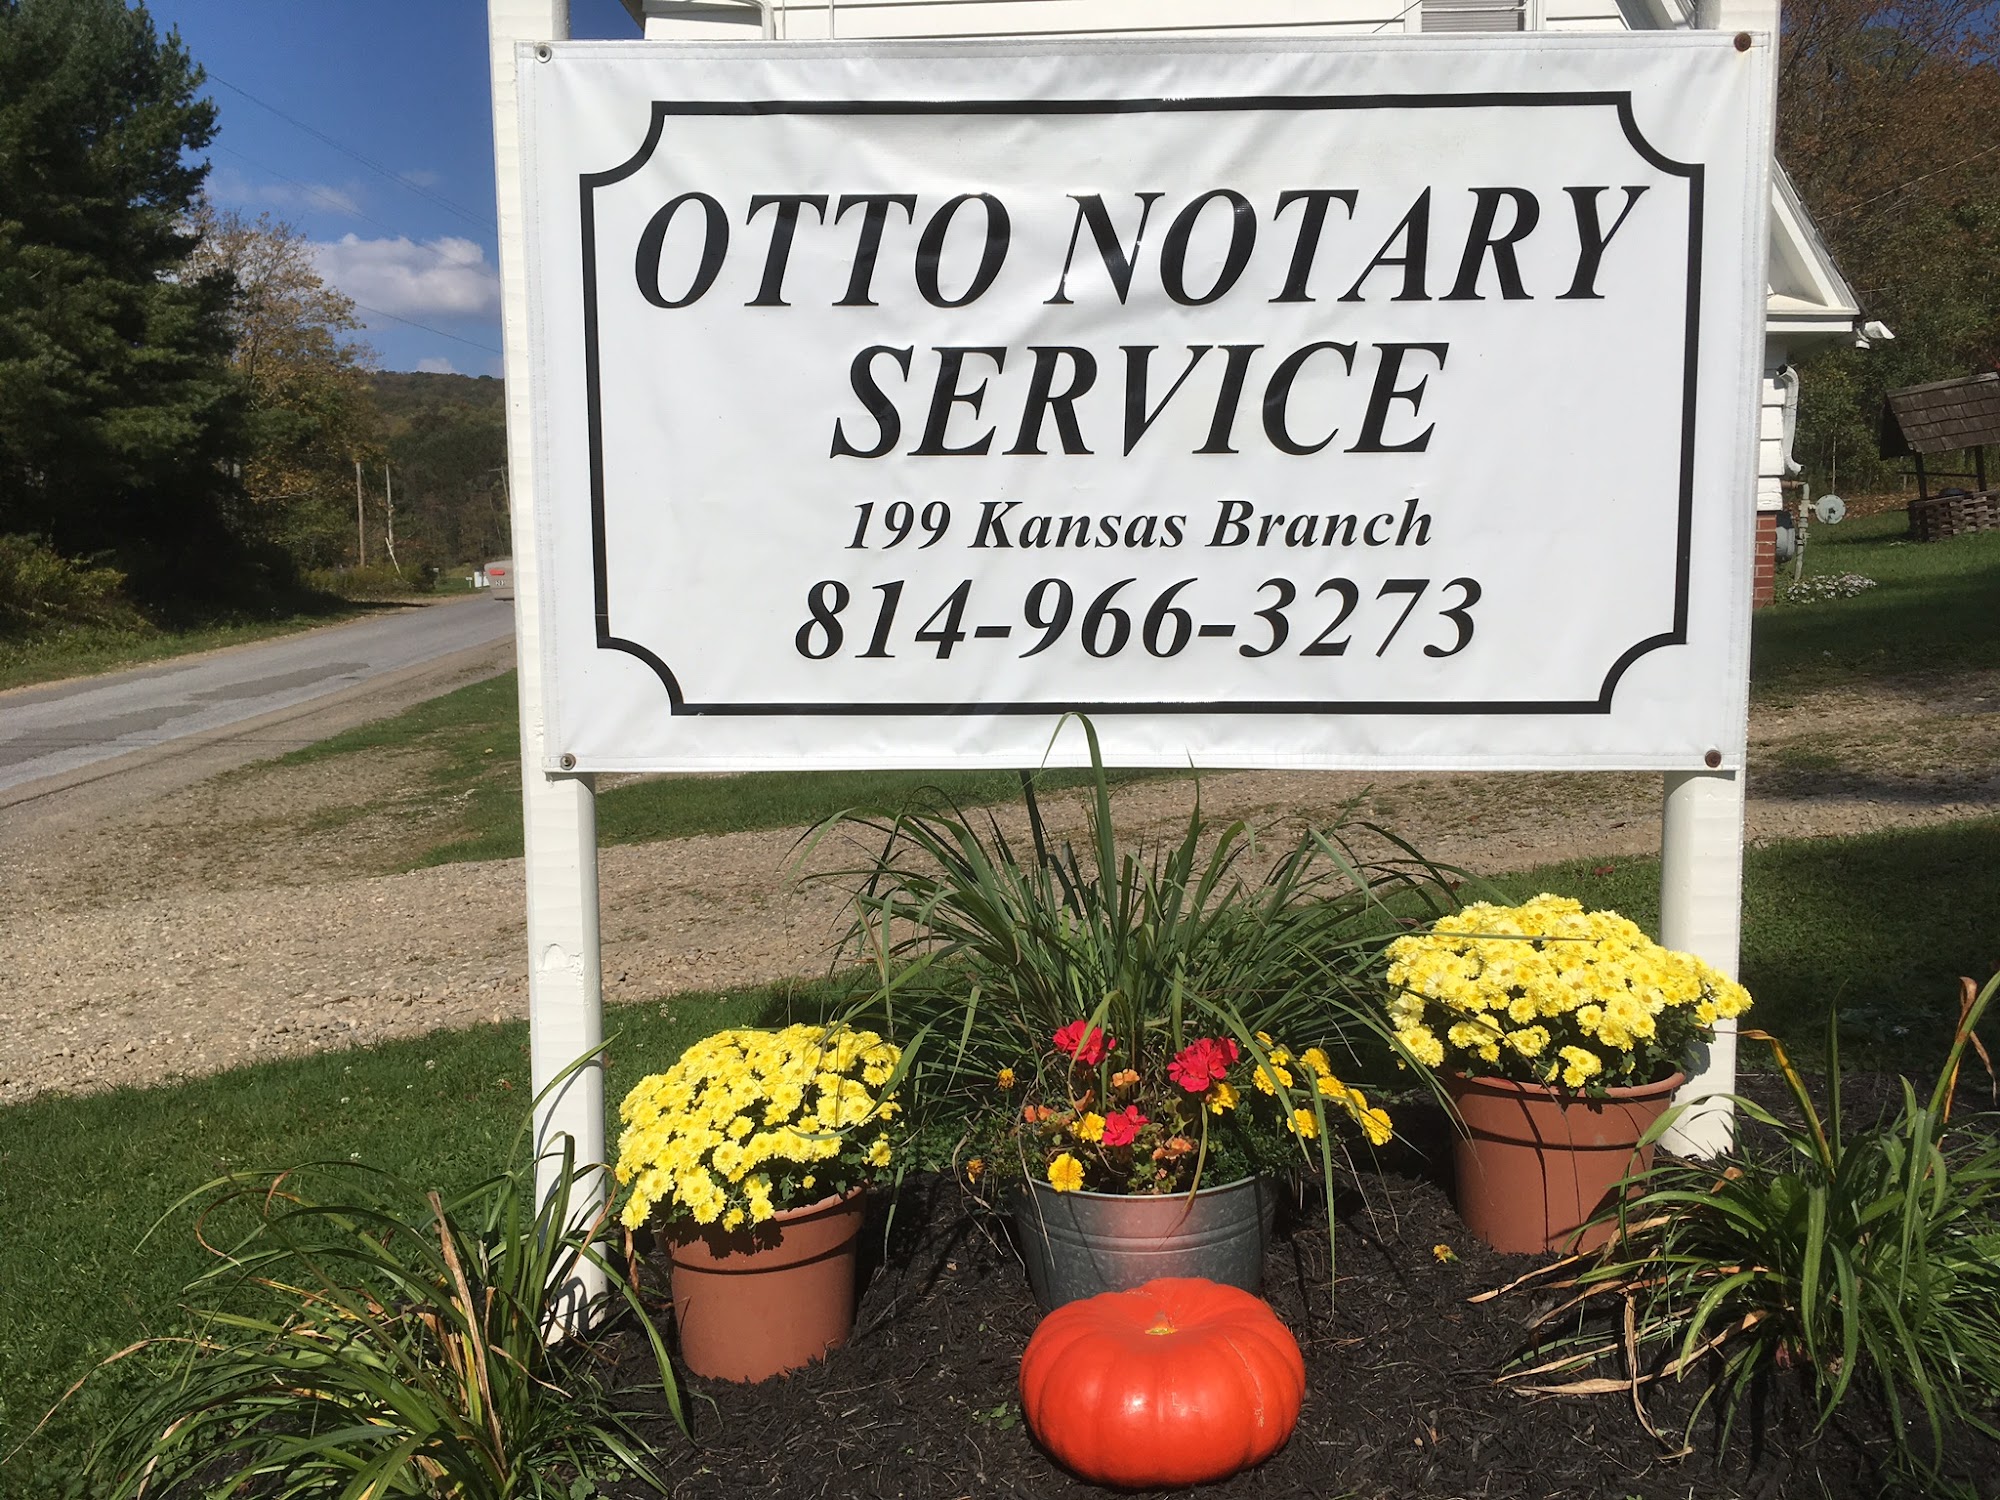 Otto Notary Service 199 Kansas Branch Rd, Duke Center Pennsylvania 16729